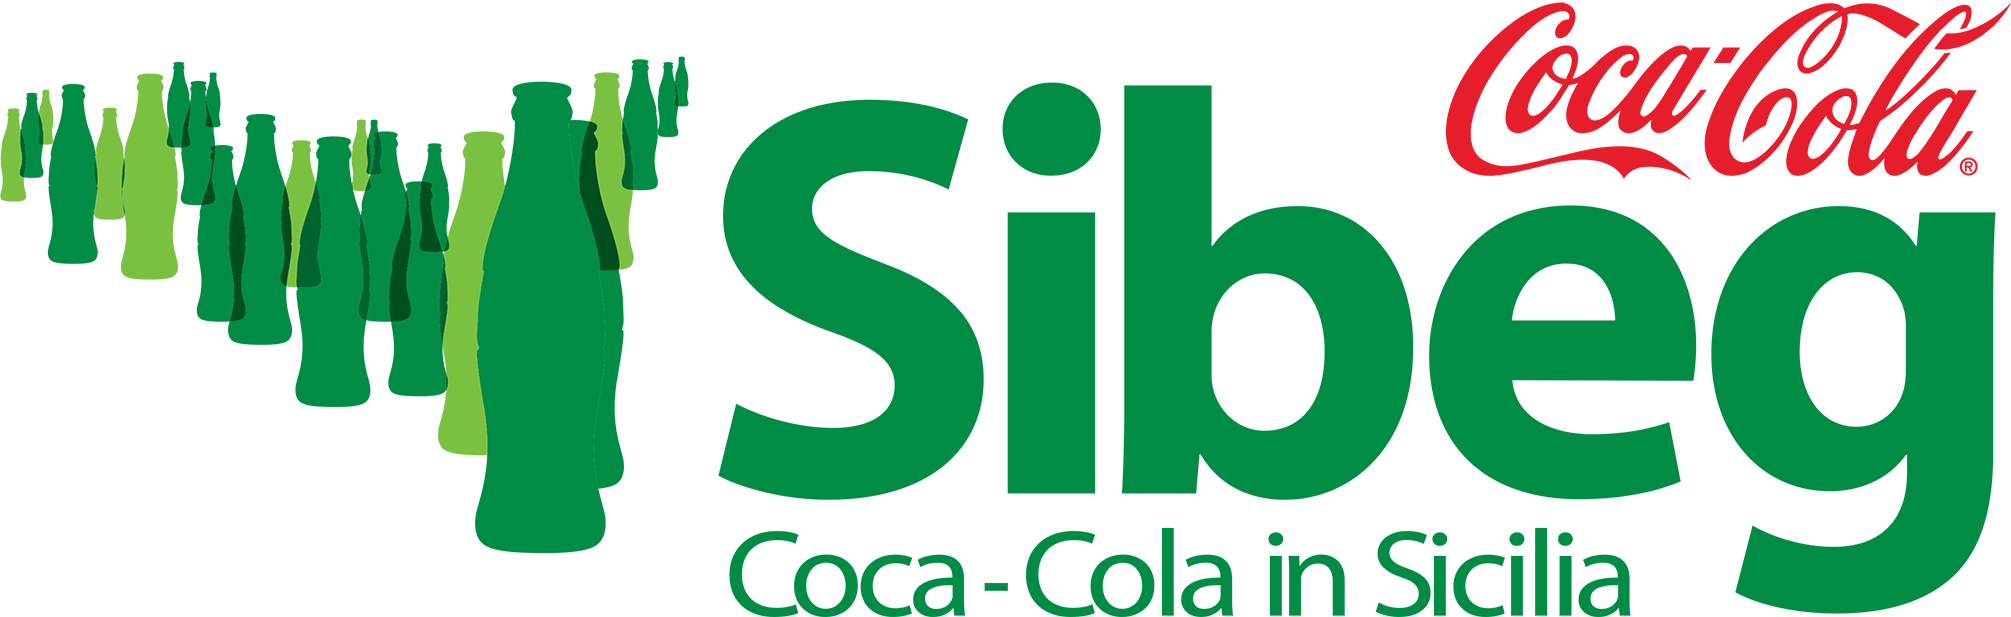 Logo SIBEG verde (1)